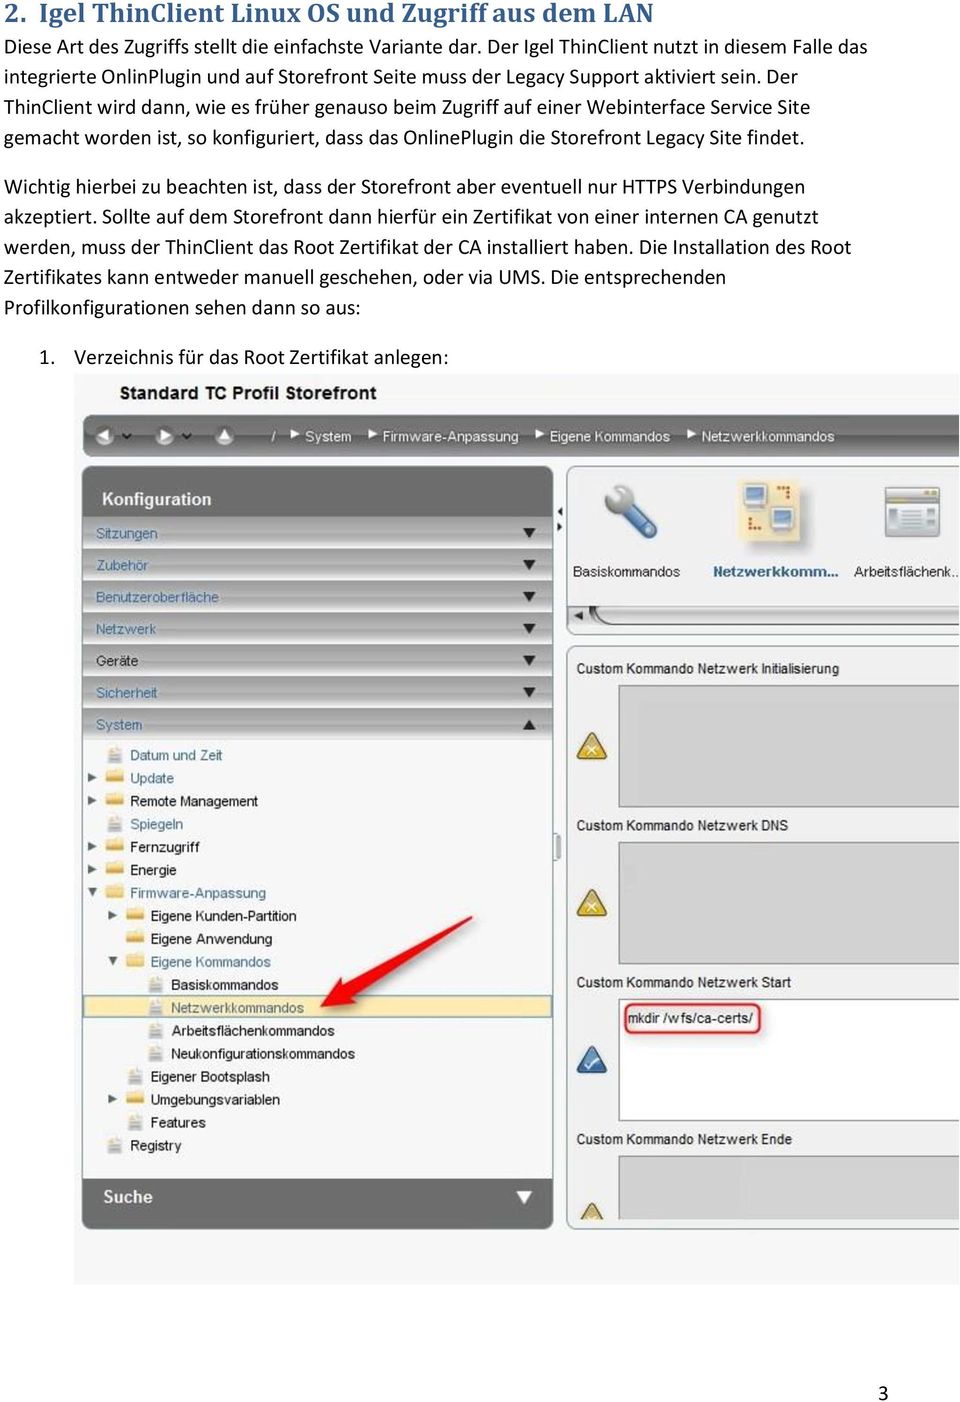 Der ThinClient wird dann, wie es früher genauso beim Zugriff auf einer Webinterface Service Site gemacht worden ist, so konfiguriert, dass das OnlinePlugin die Storefront Legacy Site findet.